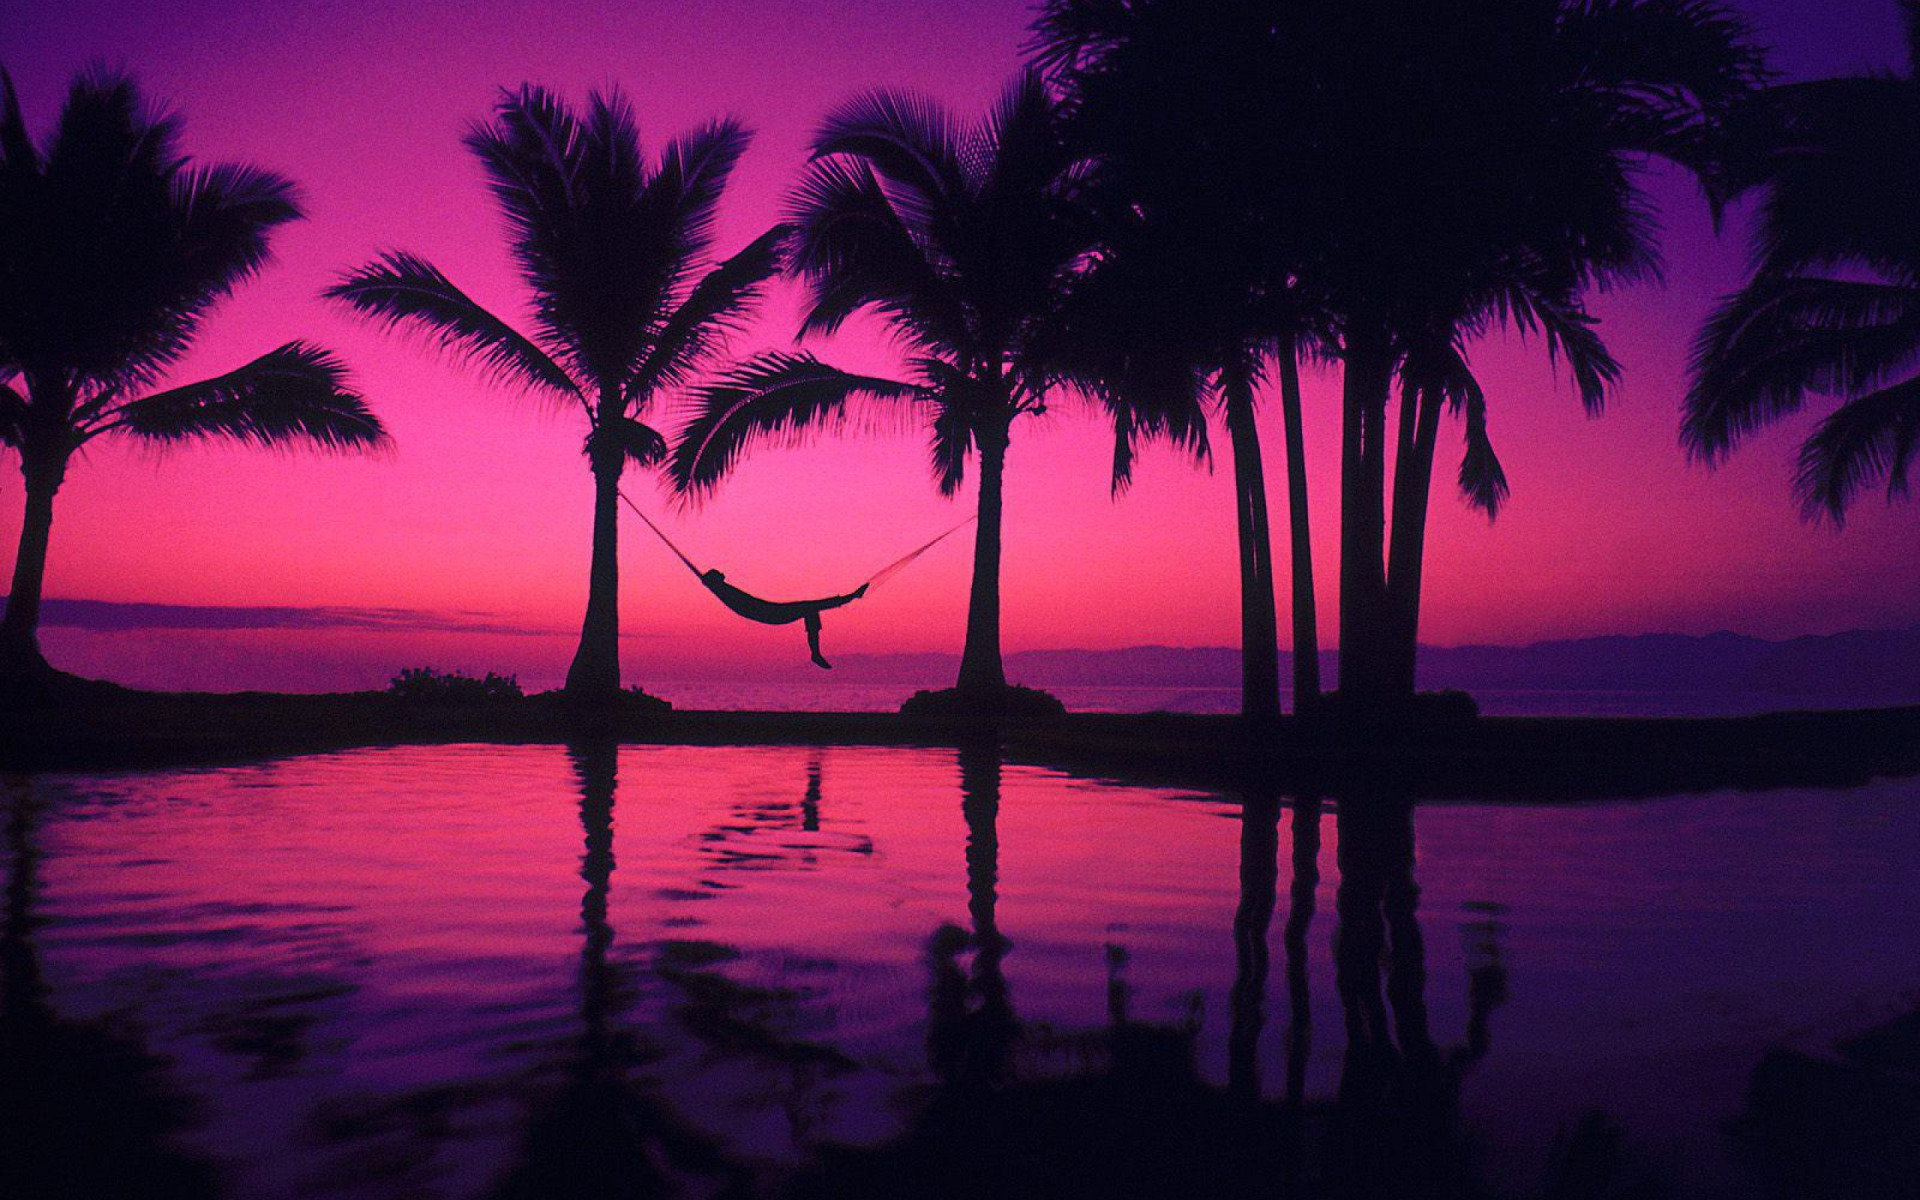 Телевизор Sharp LC-32hi3012e. Перпл Бич. Фиолетовый закат. Пальмы на закате. Sunset vibes